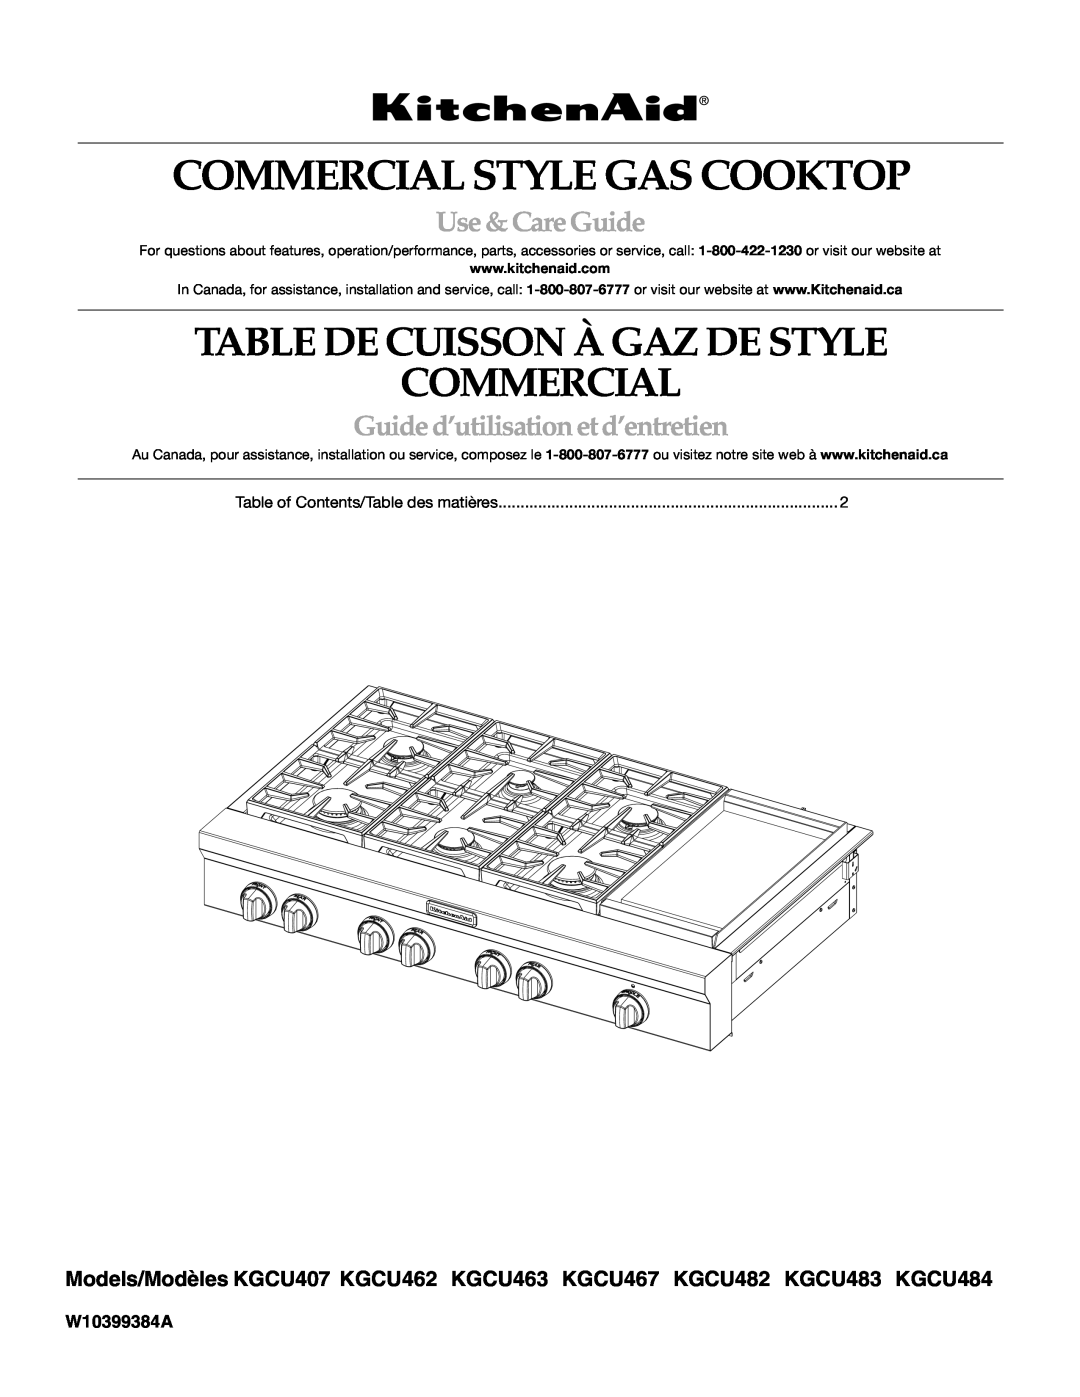 KitchenAid KGCU483VSS manual Commercial Style Gas Cooktop, Table De Cuisson À Gaz De Style Commercial, Use &CareGuide 